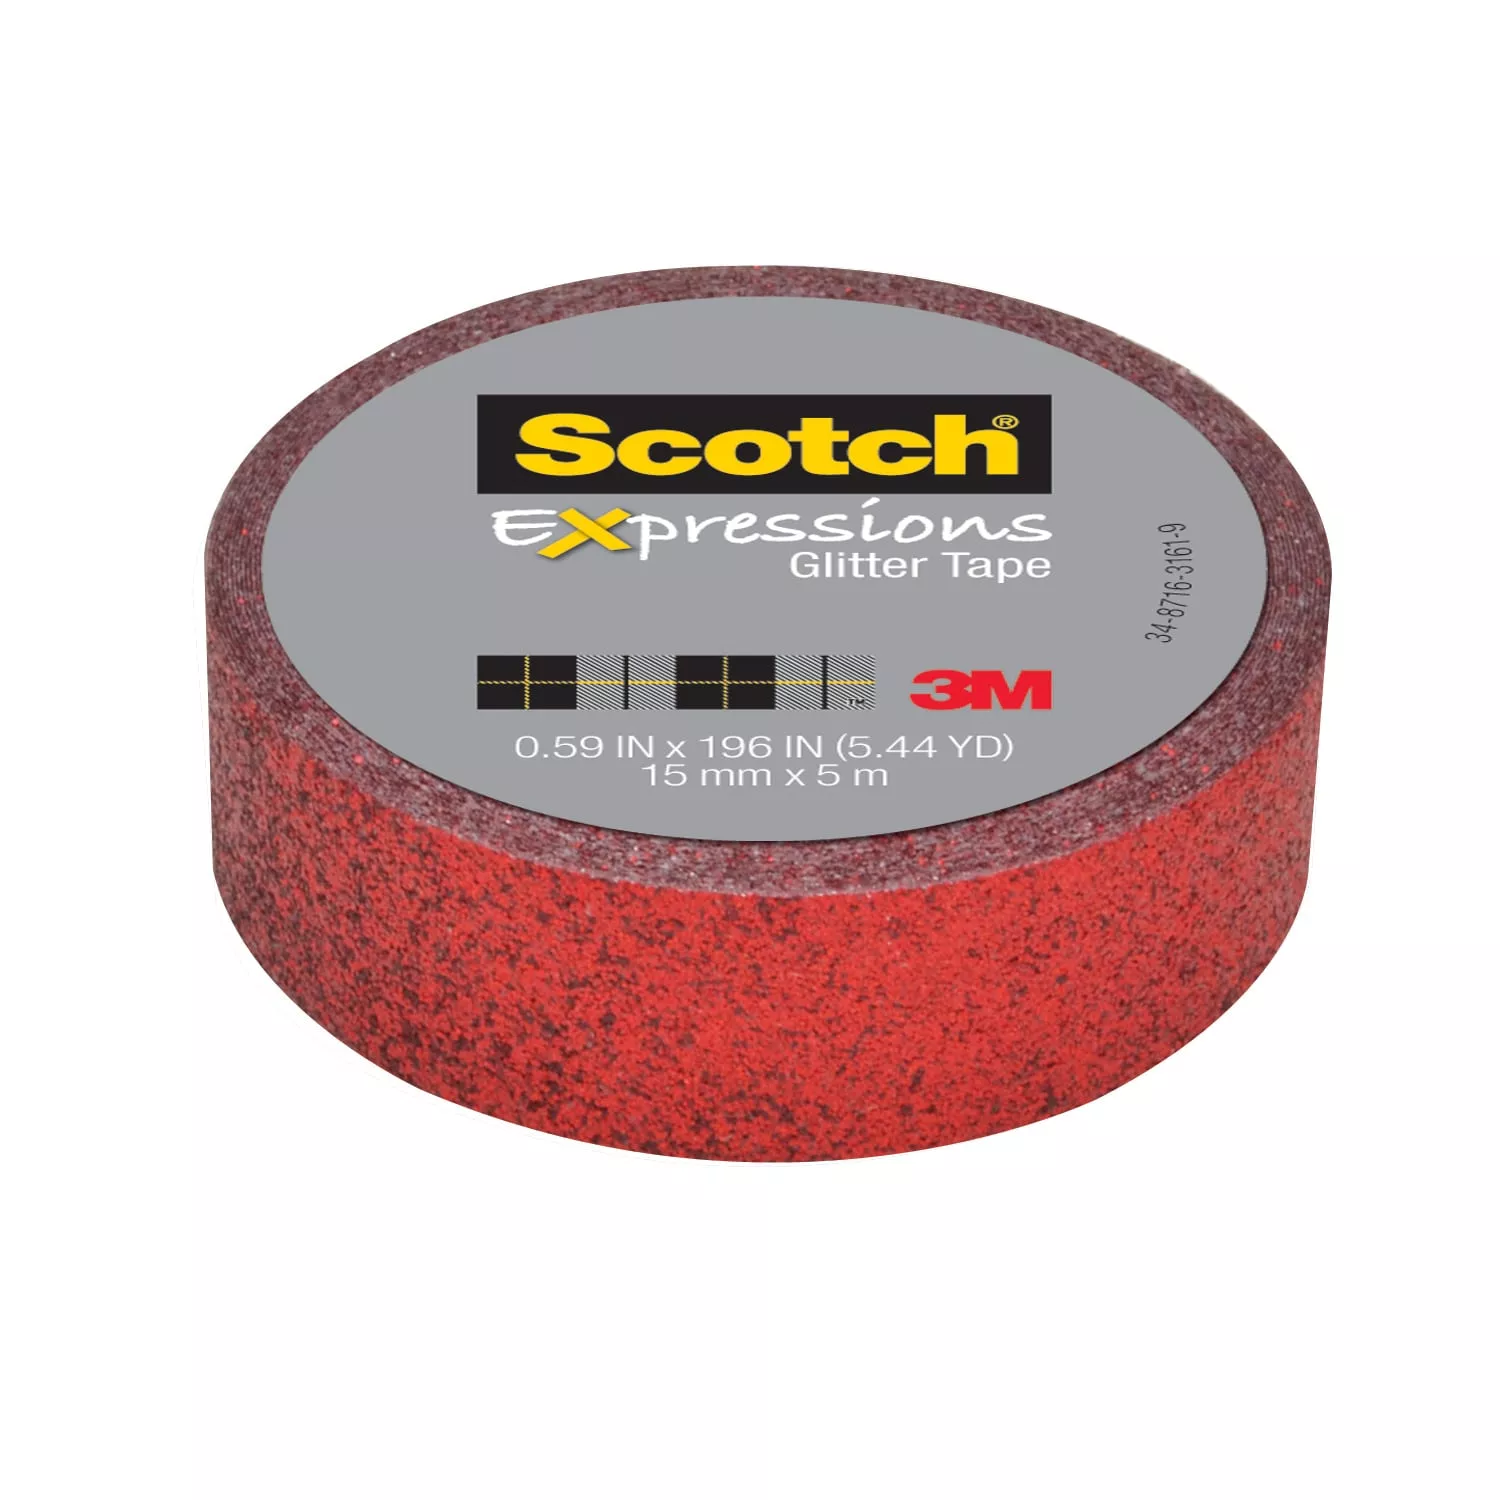 Scotch® Expressions Glitter Tape C514-RED, .59 in x 196 in (15 mm x 5 m)
Red Glitter